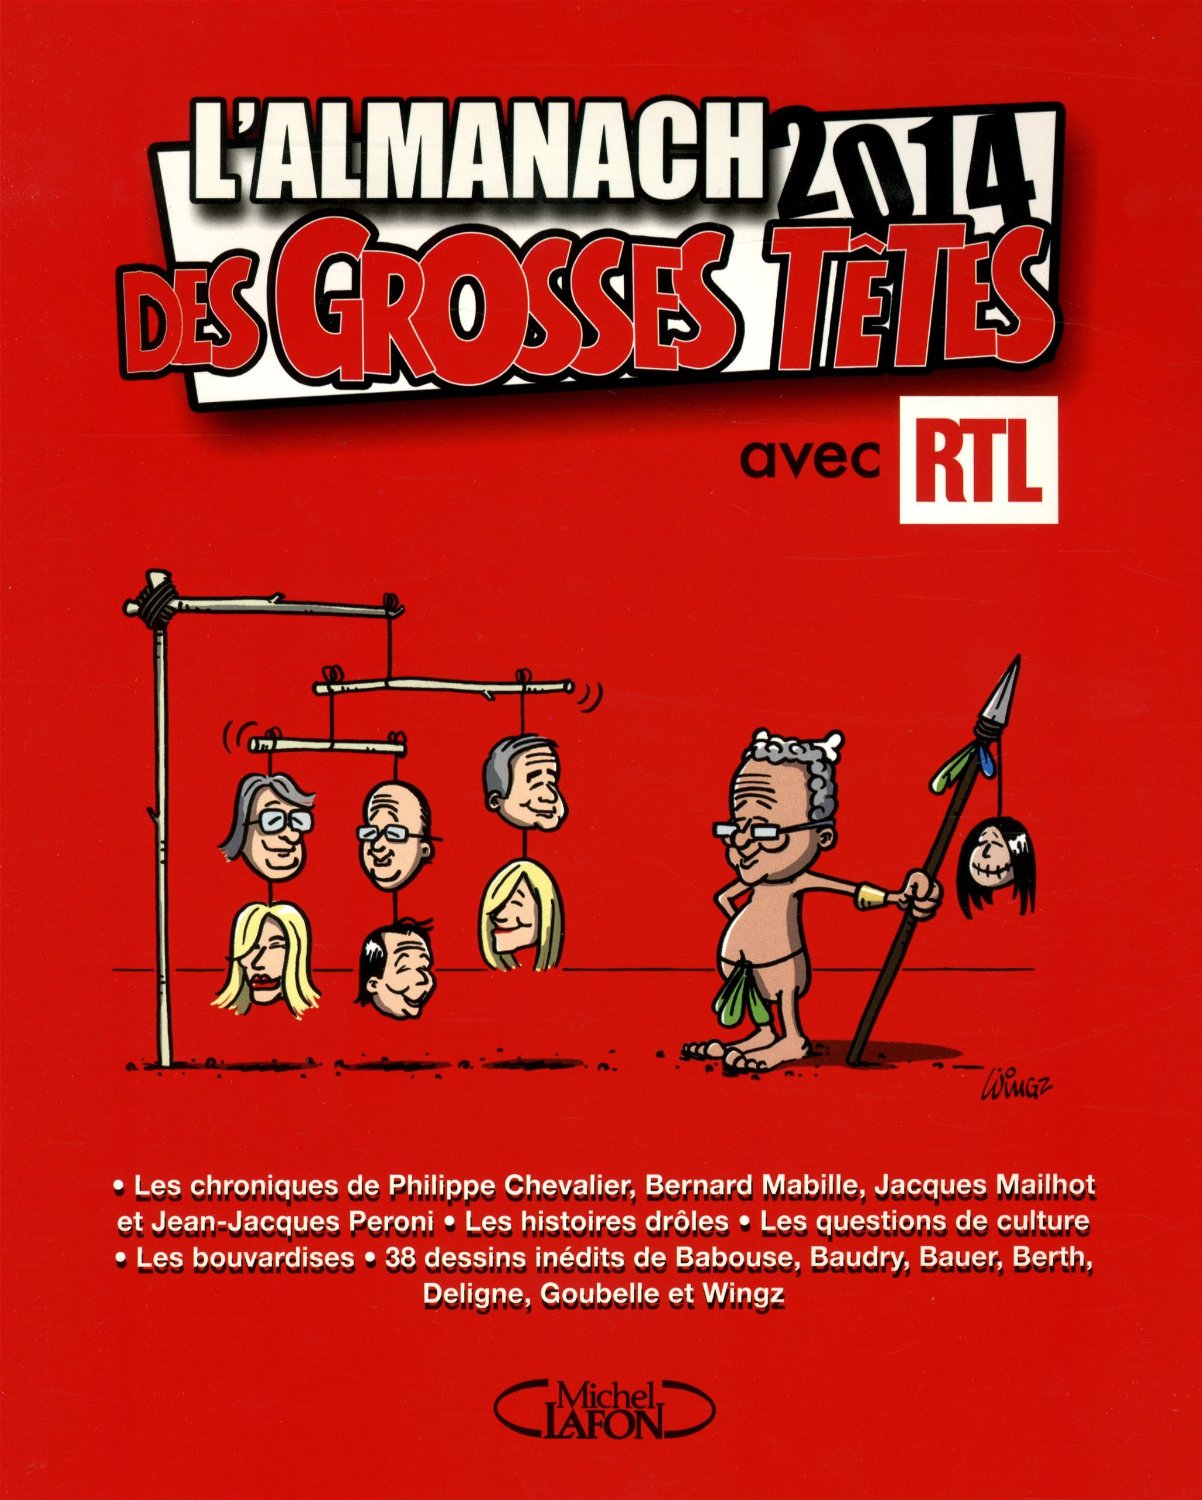 L’Almanach des Grosses Têtes 2014